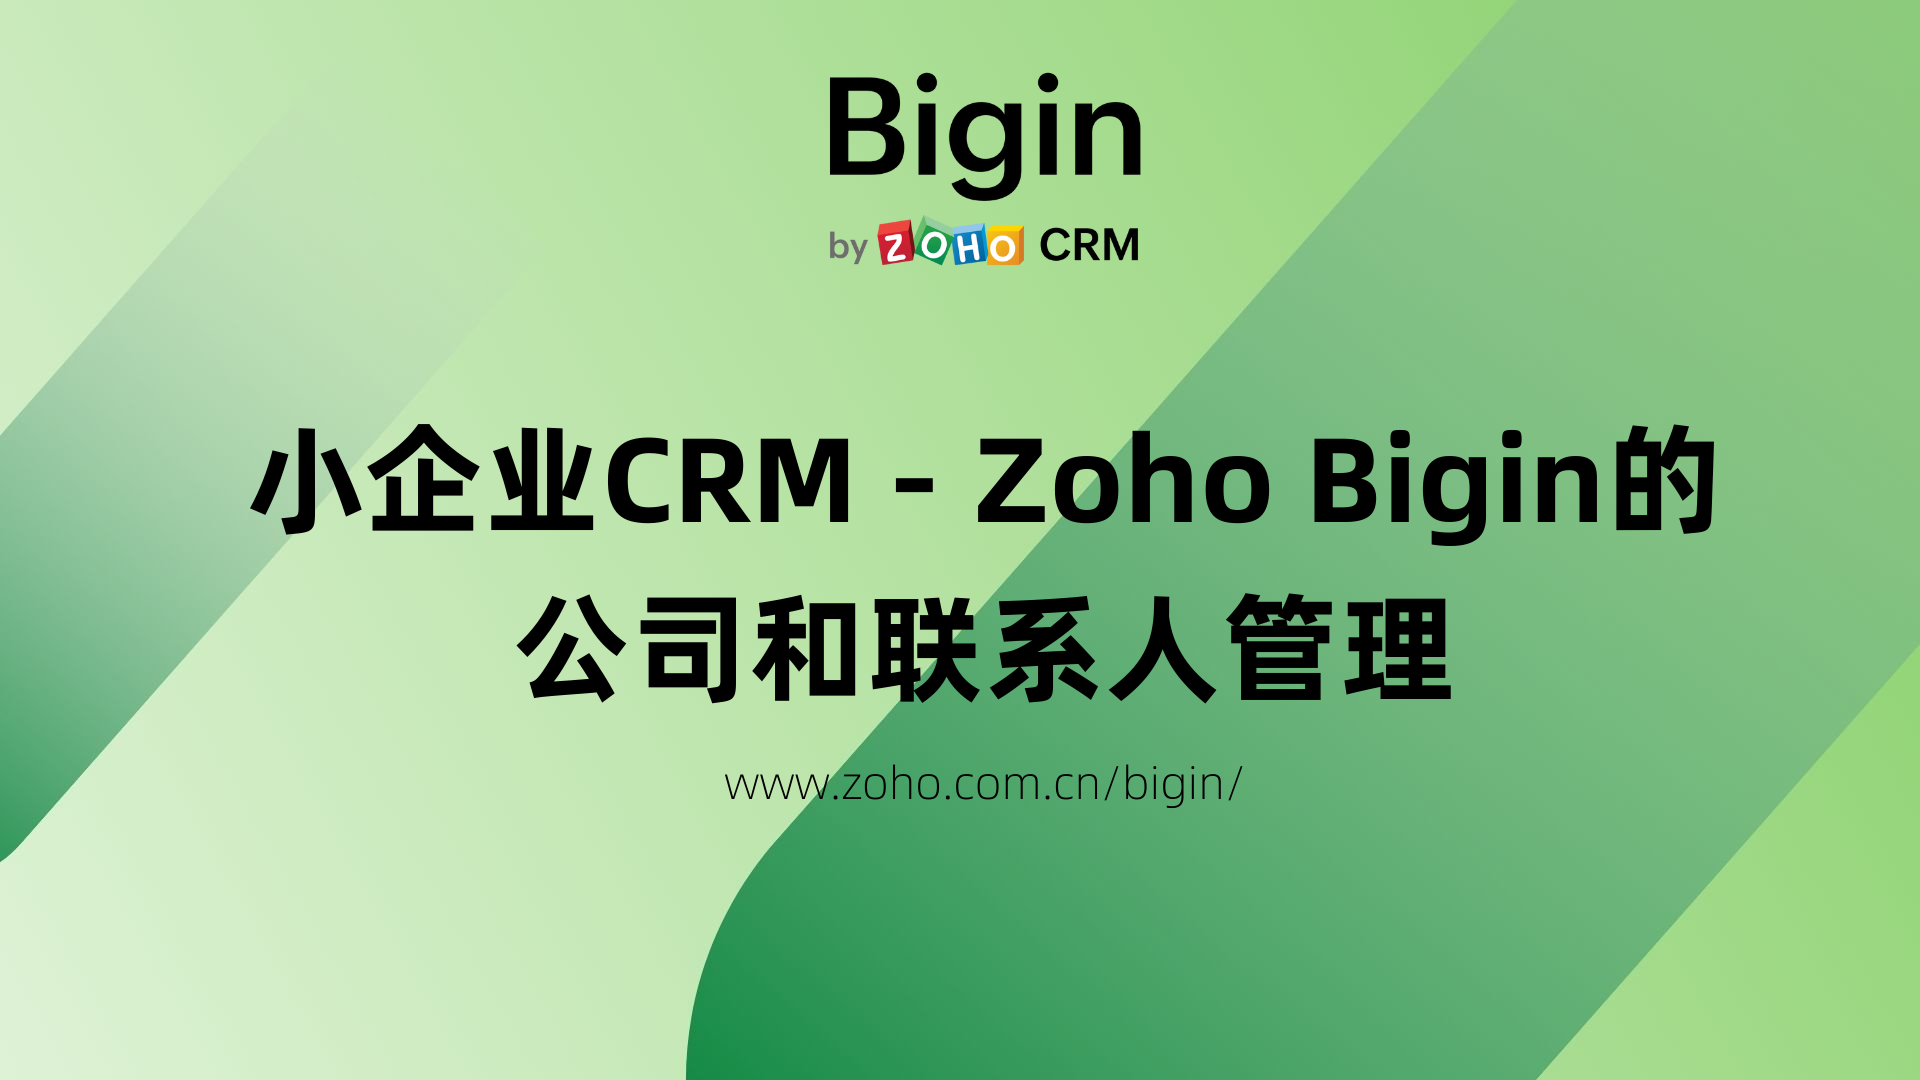 Zoho Bigin的公司和联系人管理